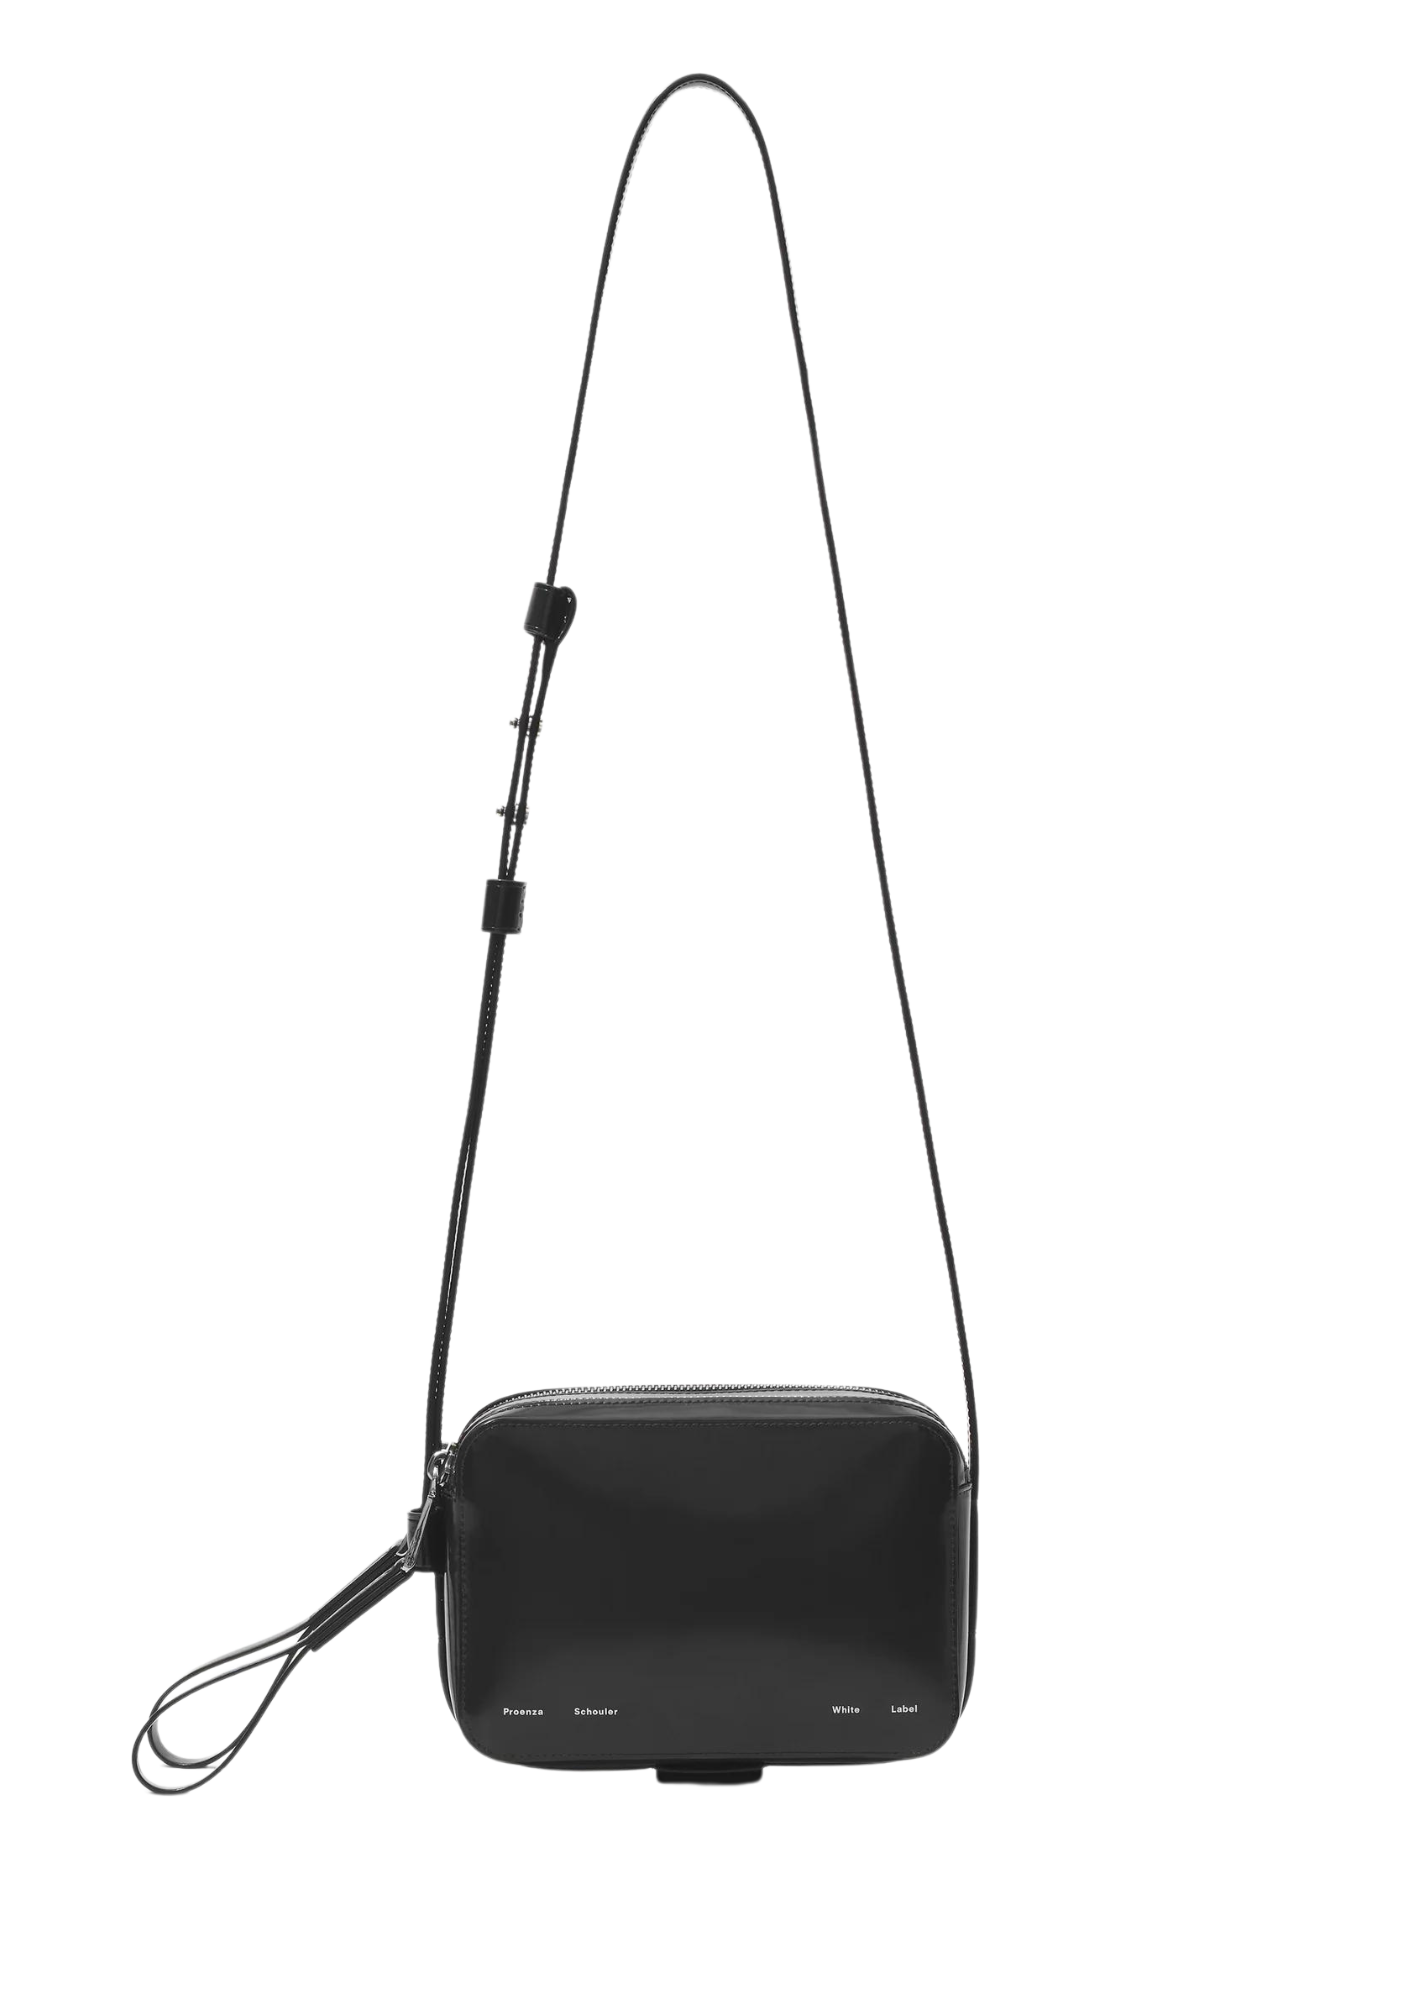 Watts Leather Camera Bag - Spazzolato Black